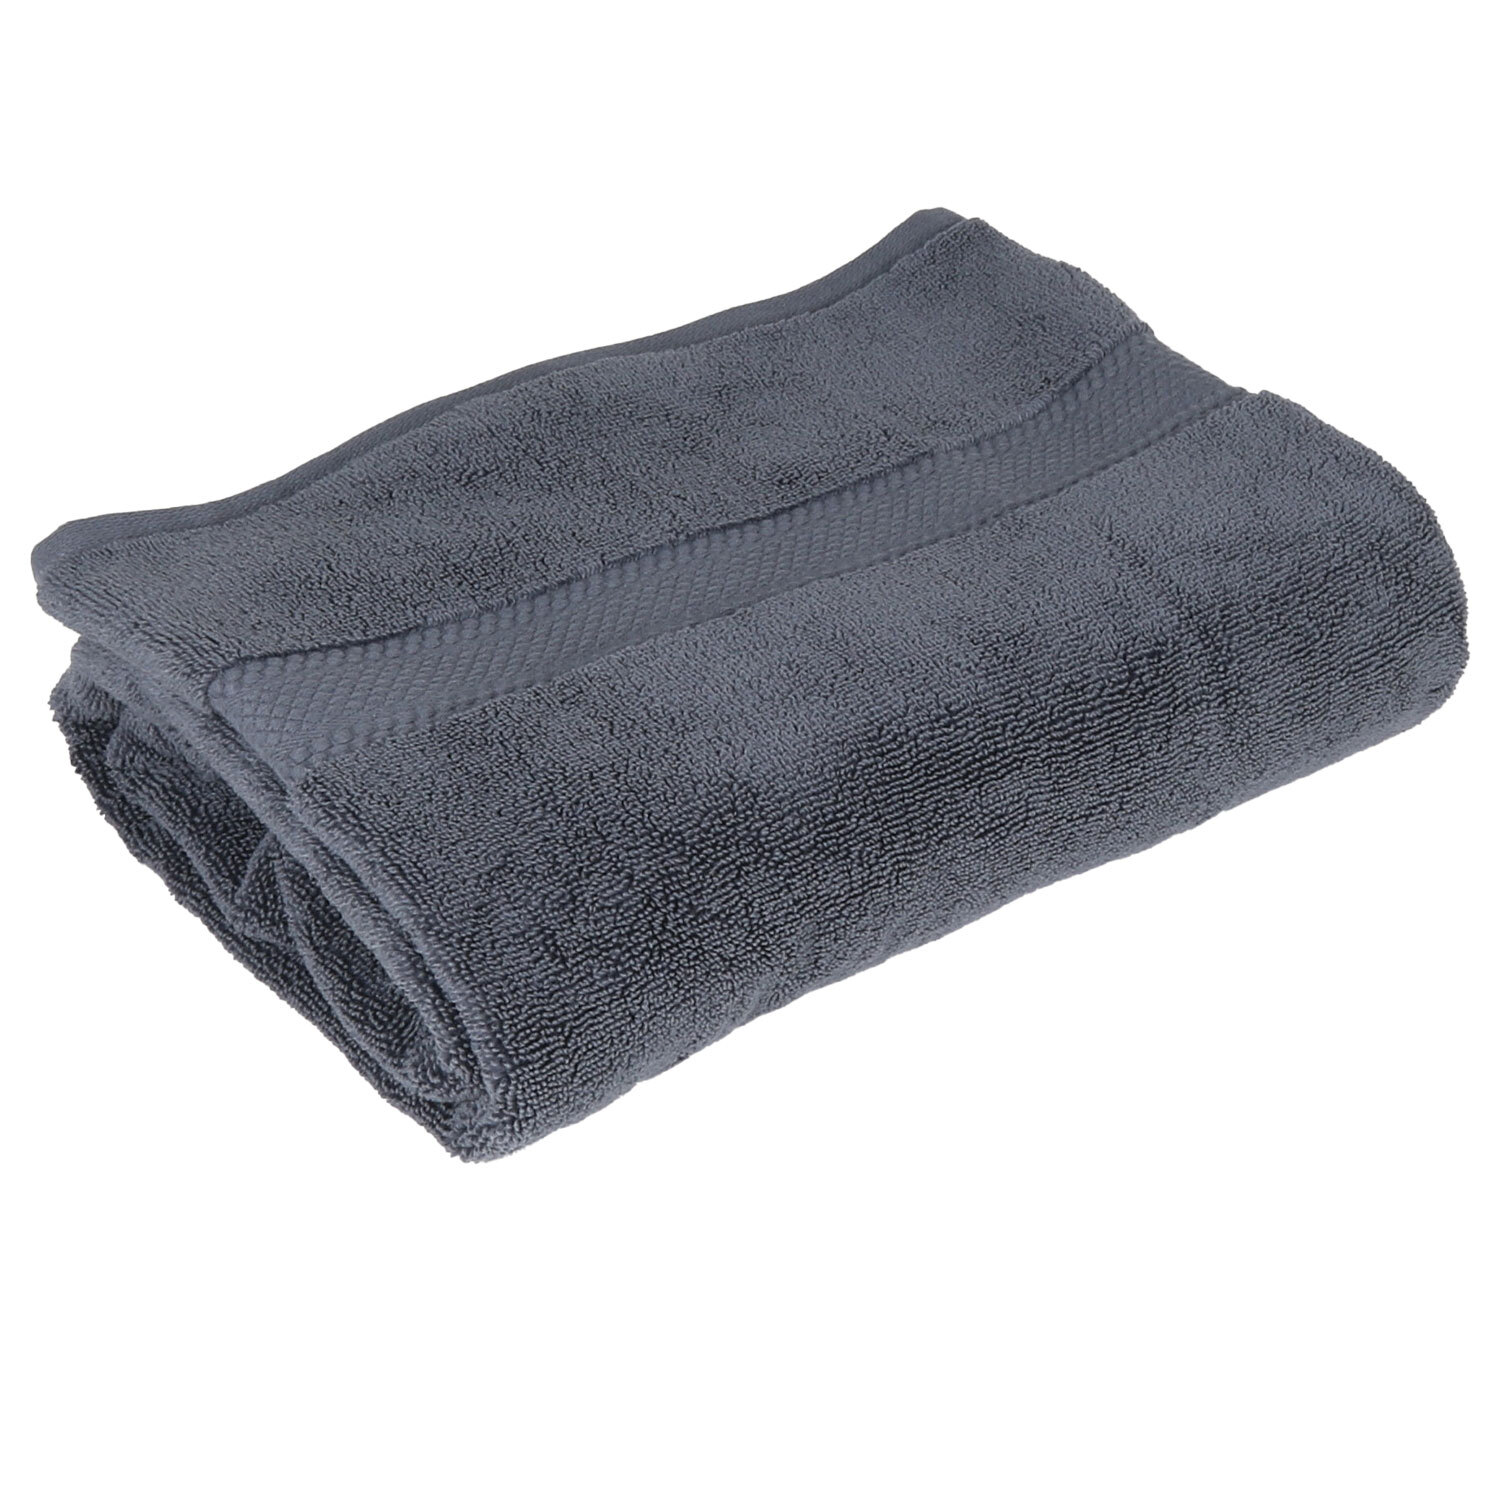 Deluxe Hand Towel - Midnight Grey Image